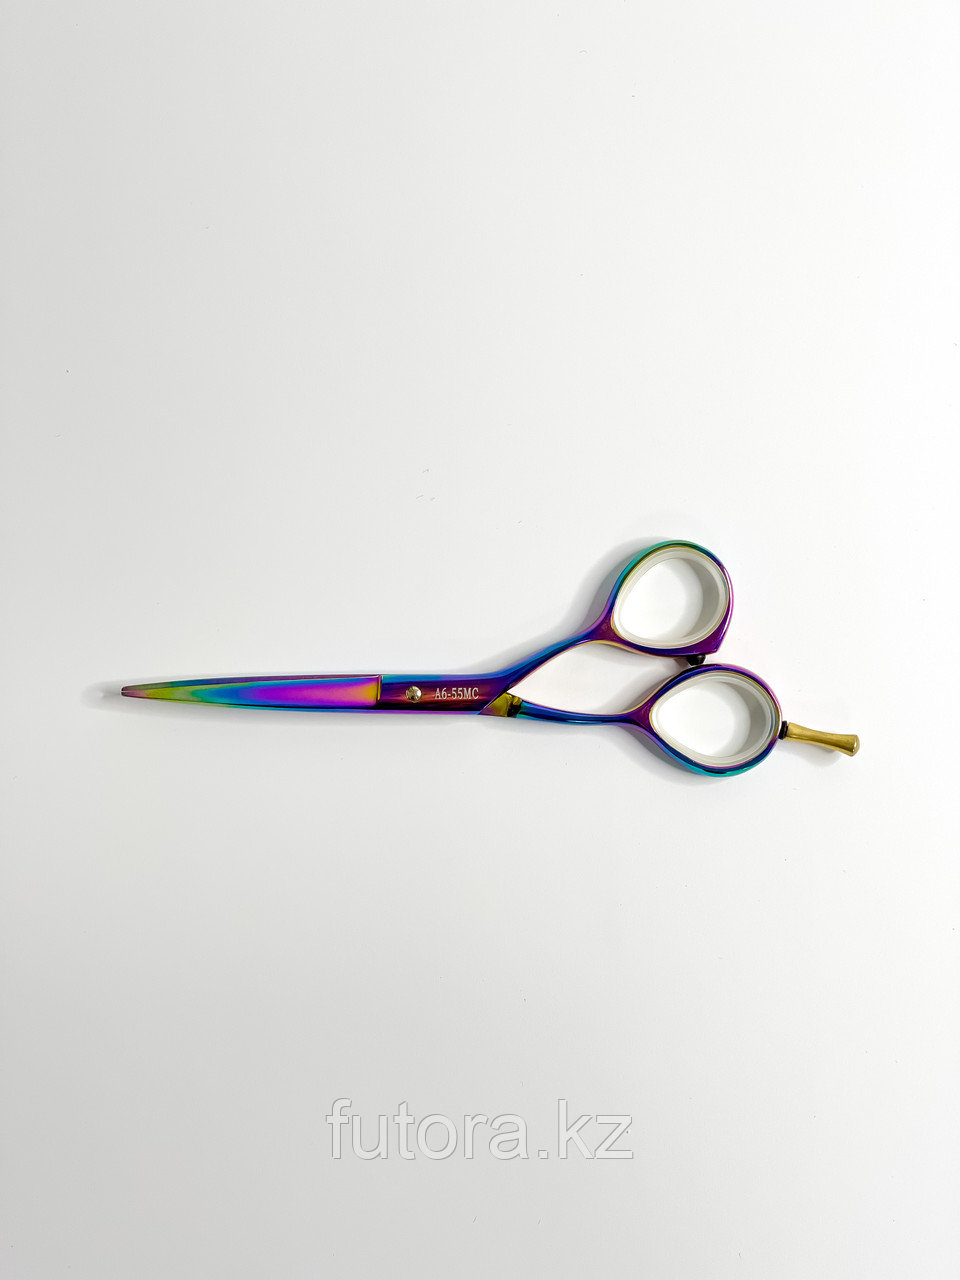 Парикмахерские ножницы для стрижки волос "Flamingo - Multicolor A6-55MC"